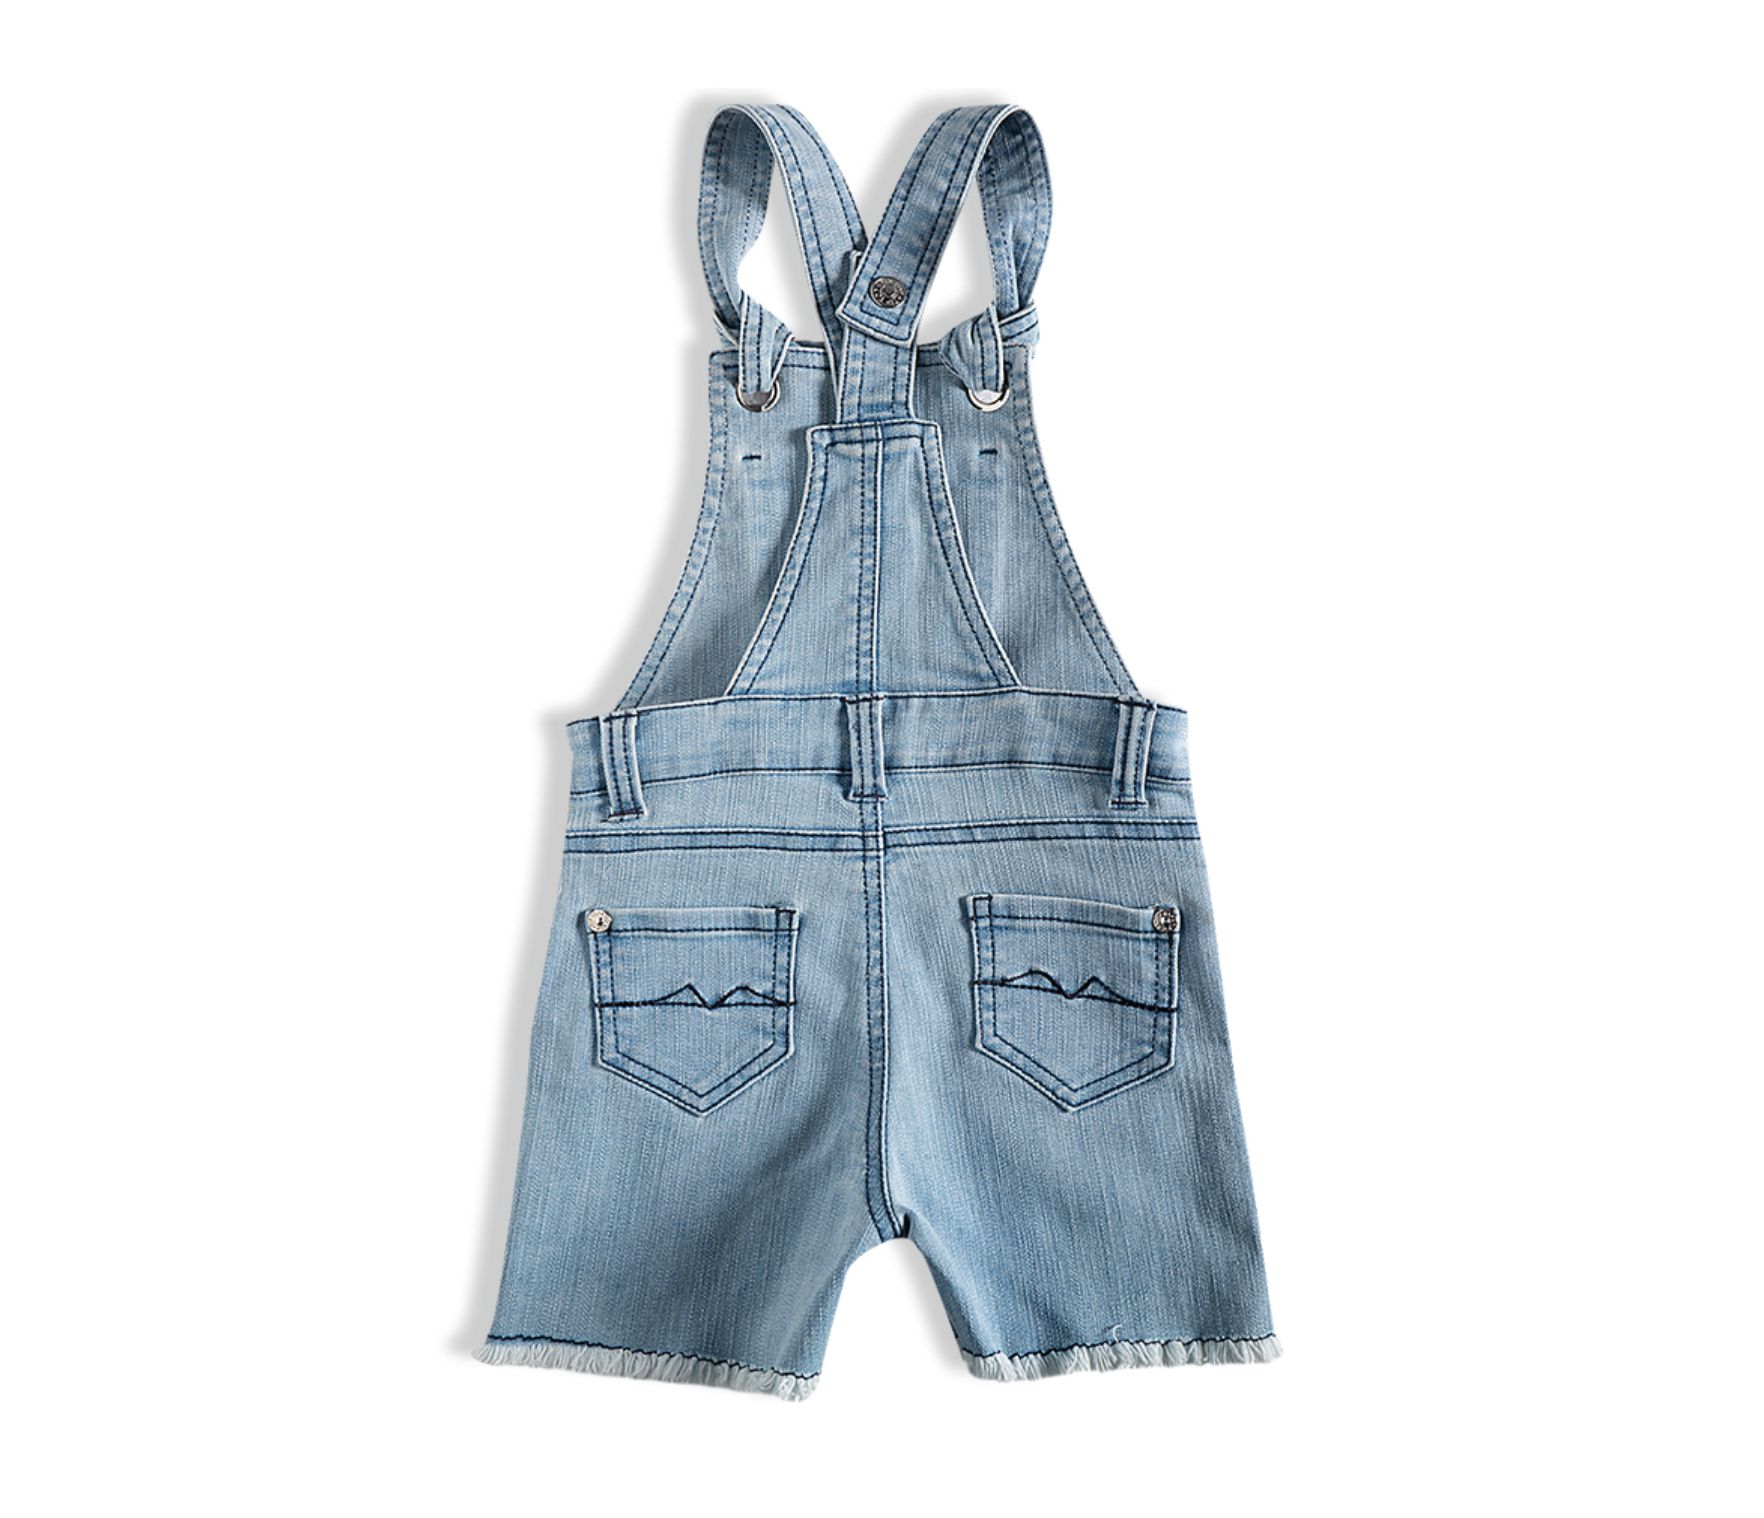 Jardineira bebê jeans - Tip Top - 13500100